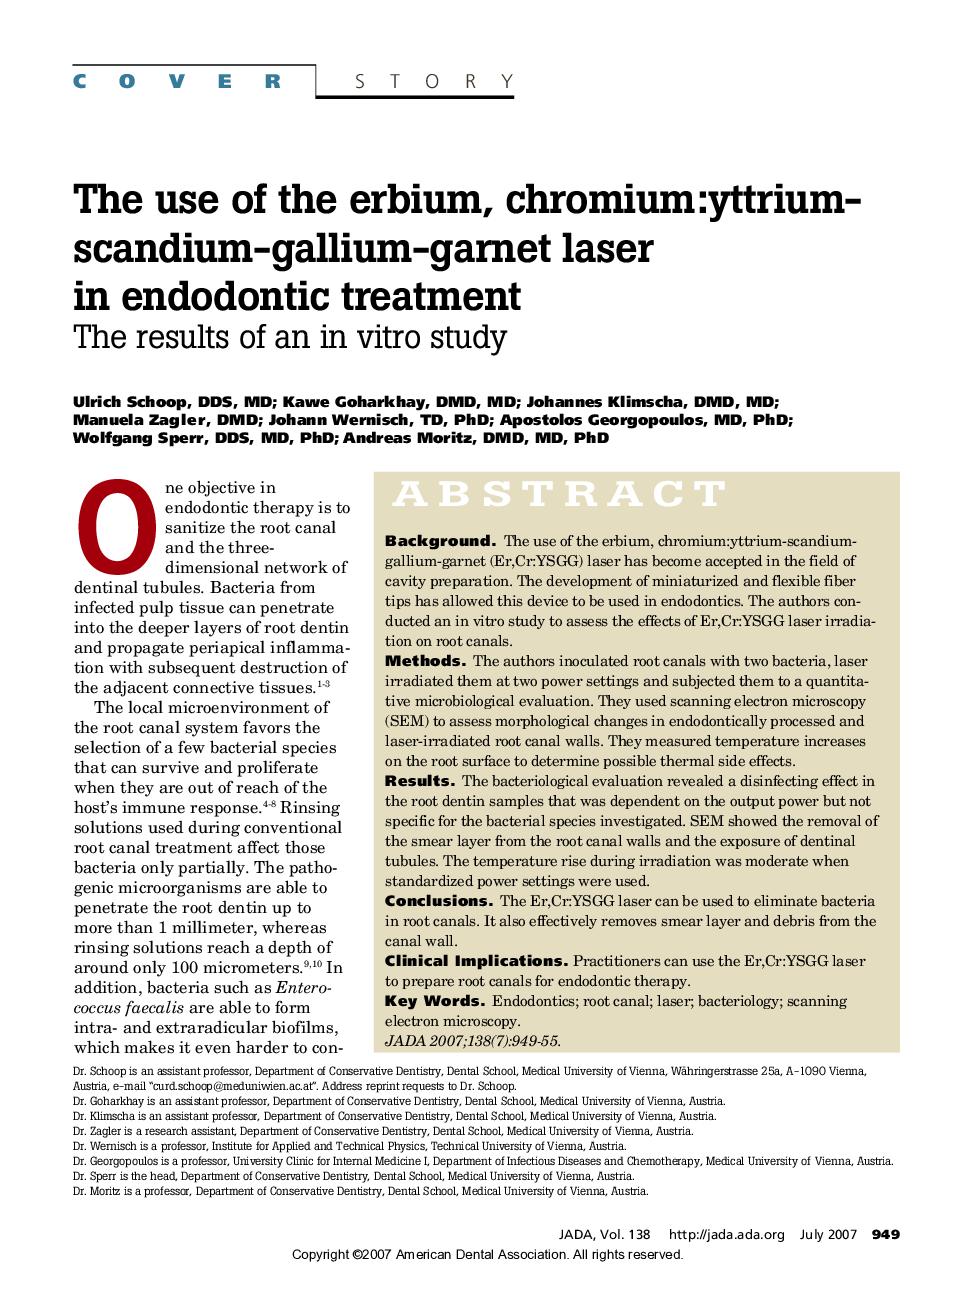 The use of the erbium, chromium:yttrium-scandium-gallium-garnet laser in endodontic treatment: The results of an in vitro study